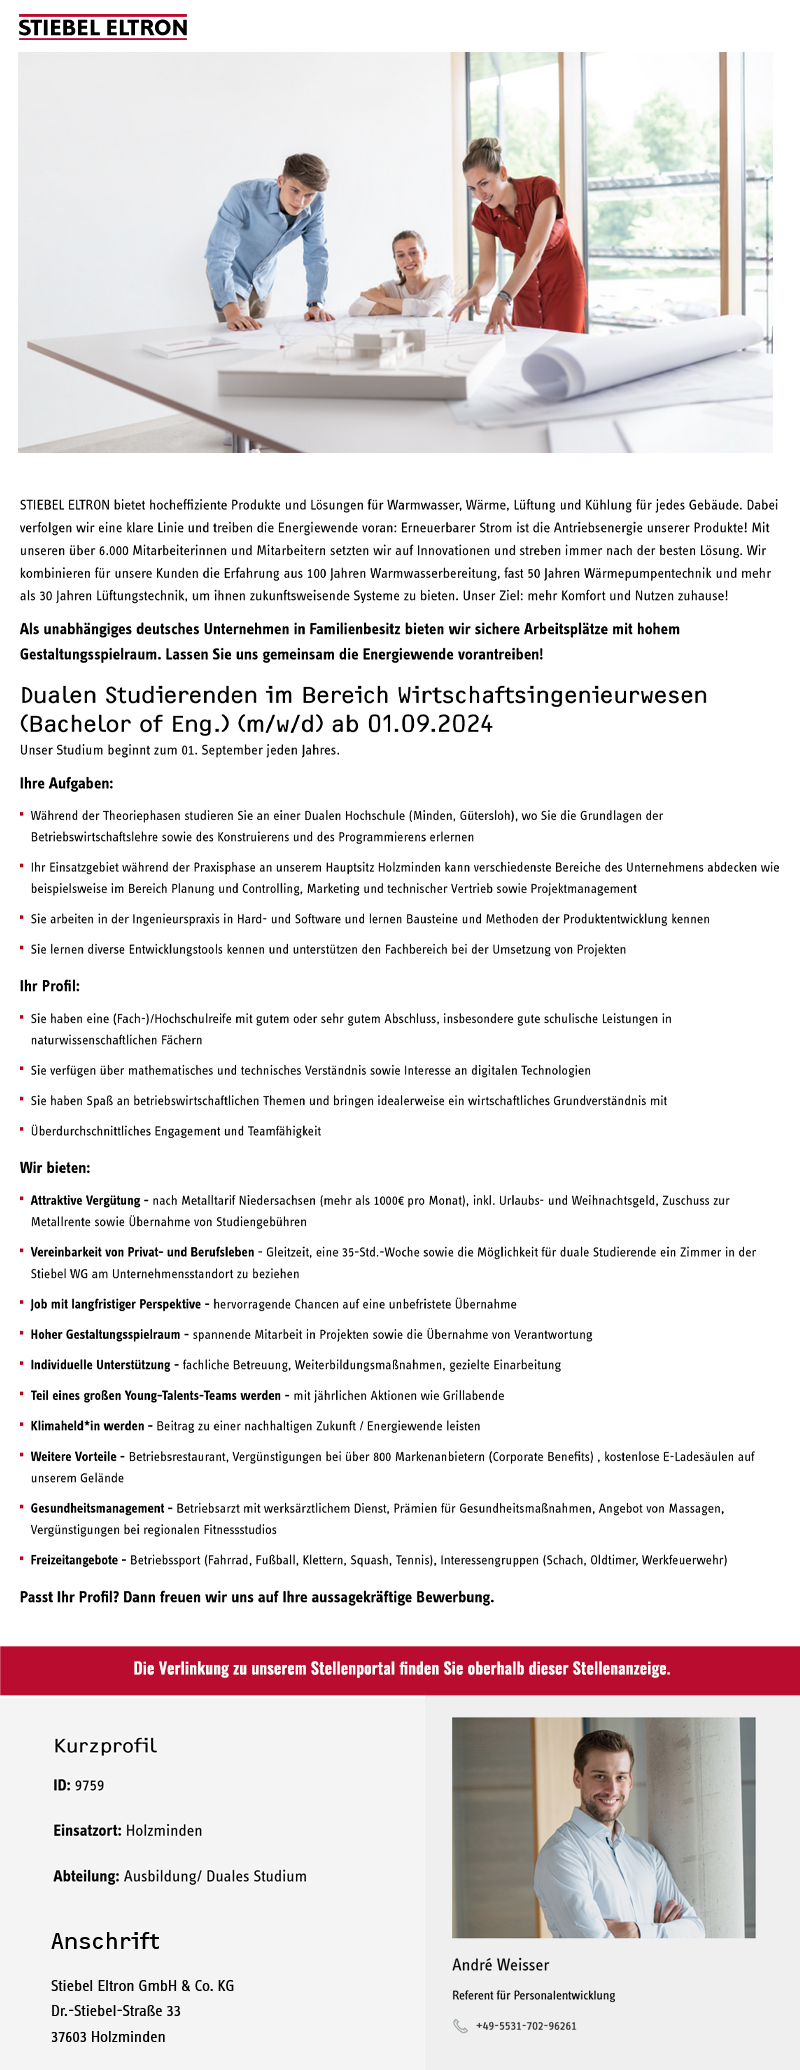 Dualen Studierenden im Bereich Wirtschaftsingenieurwesen (Bachelor of Eng.) (m/w/d) ab 01.09.2024 - Stiebel Eltron GmbH & Co. KG